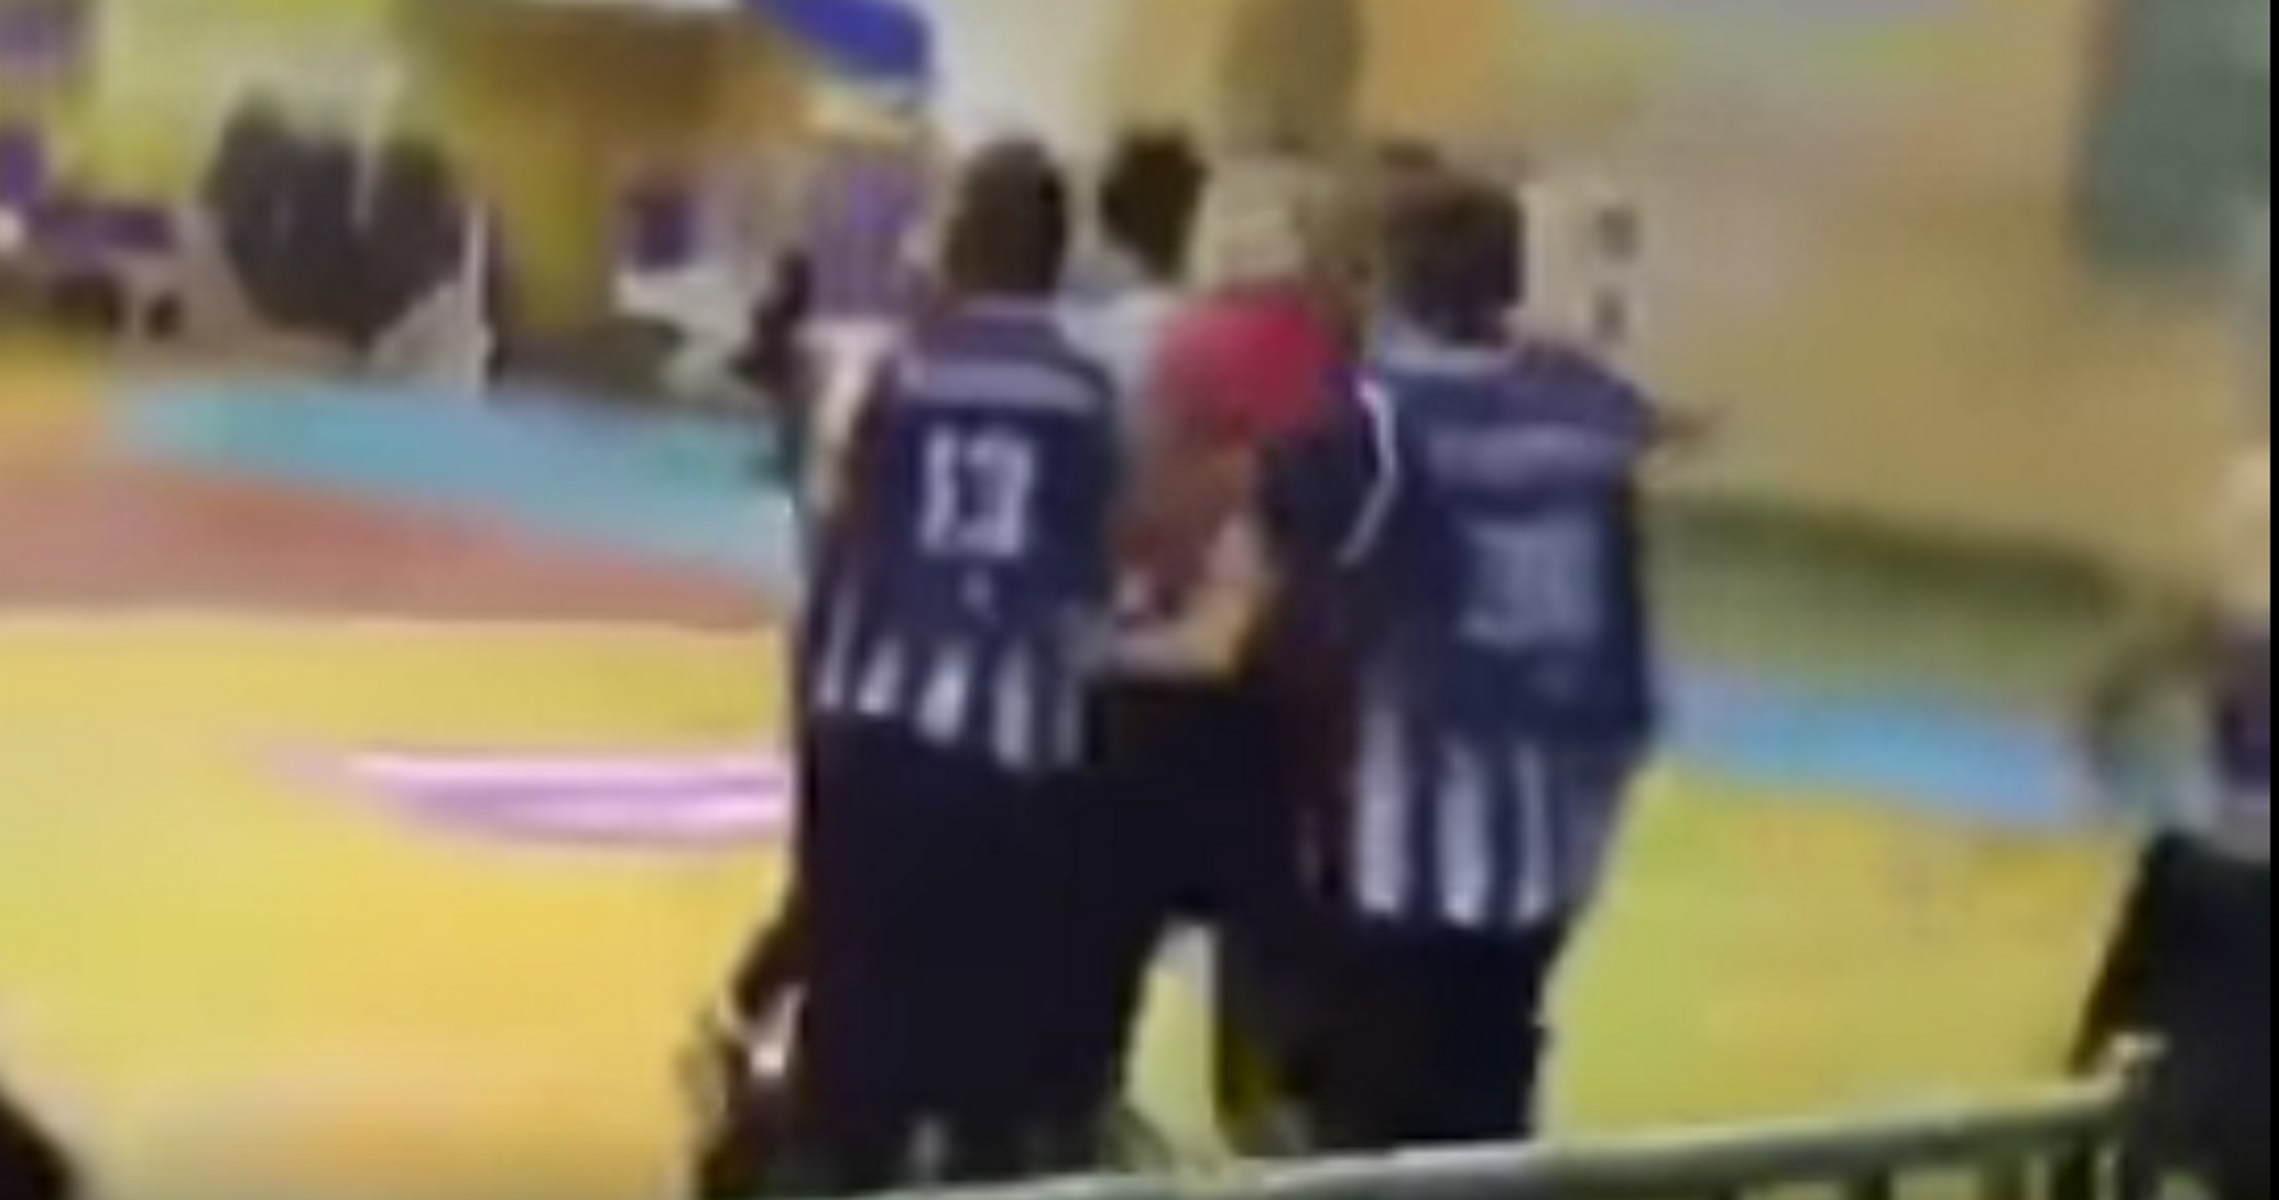 Ξύλο και “κουτουλιά” σε διαιτητή σε αγώνα μπάσκετ στην Κέρκυρα! Στο νοσοκομείο ο άτυχος ρέφερι (video)